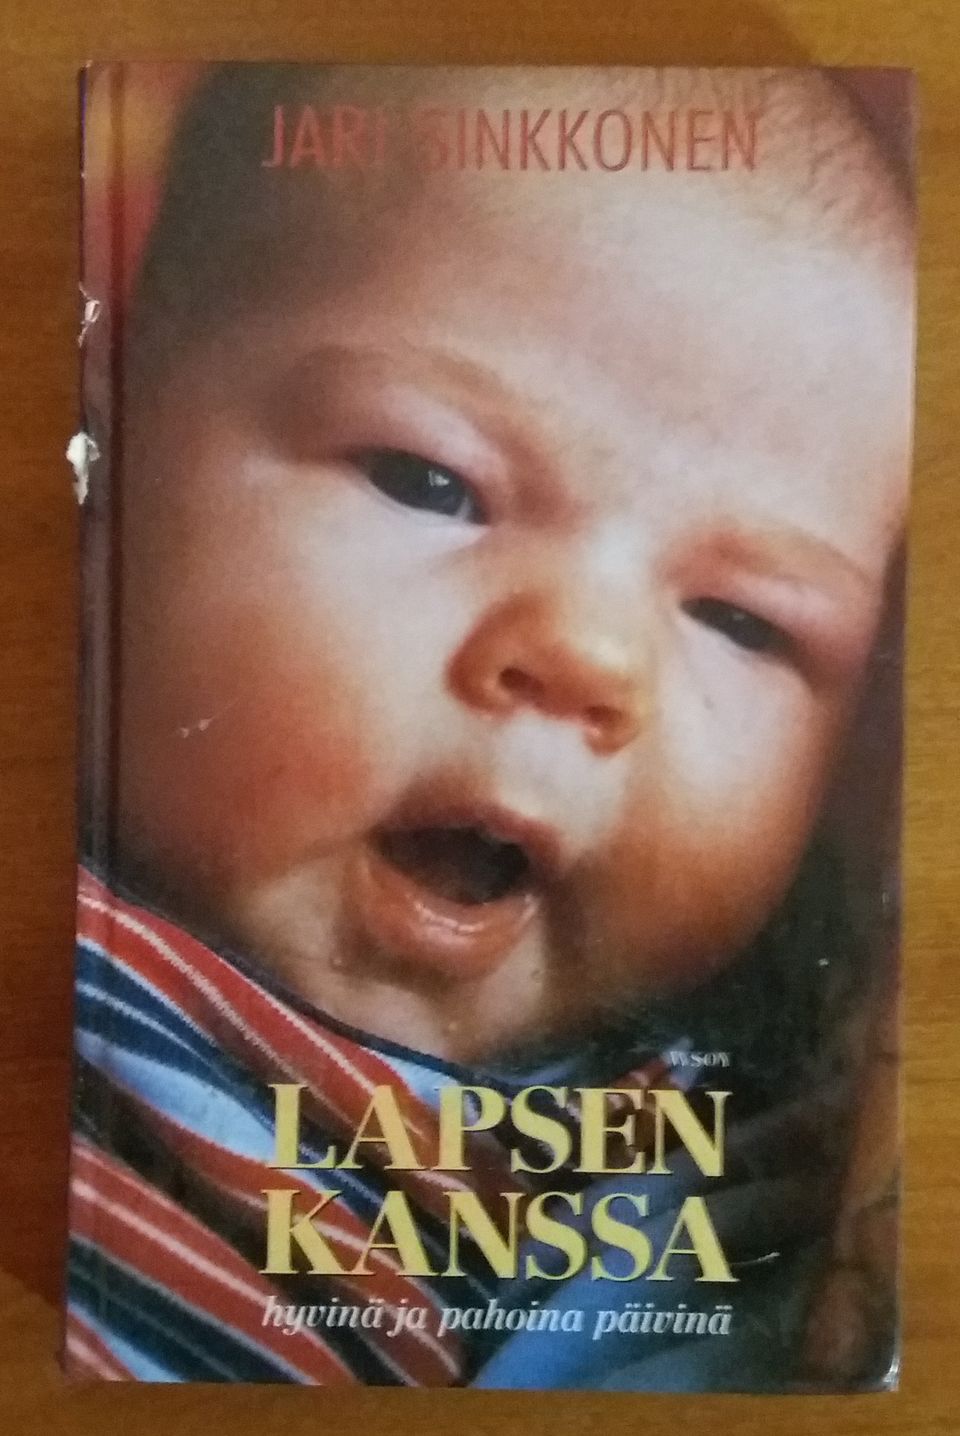 Jari Sinkkonen LAPSEN KANSSA hyvinä ja pahoina päivinä Wsoy 1995